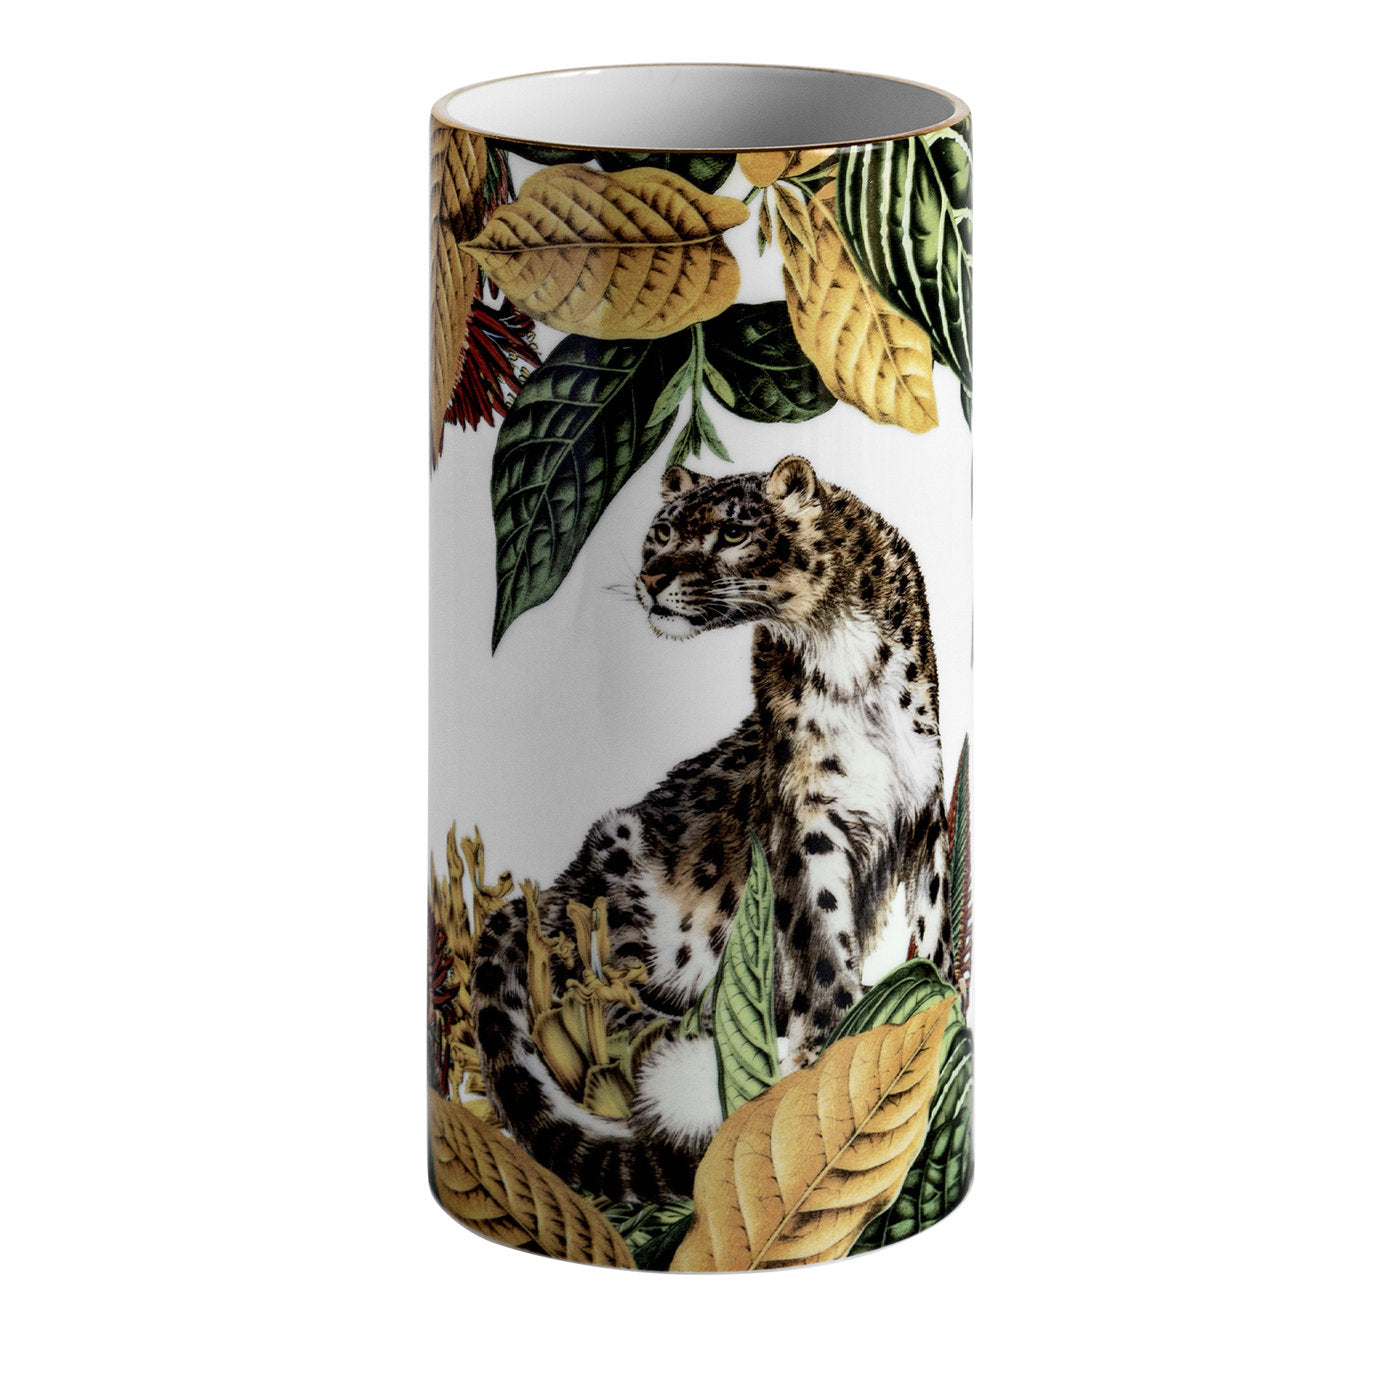 Animalia Porzellan Zylindrische Vase mit Gepard - Hauptansicht